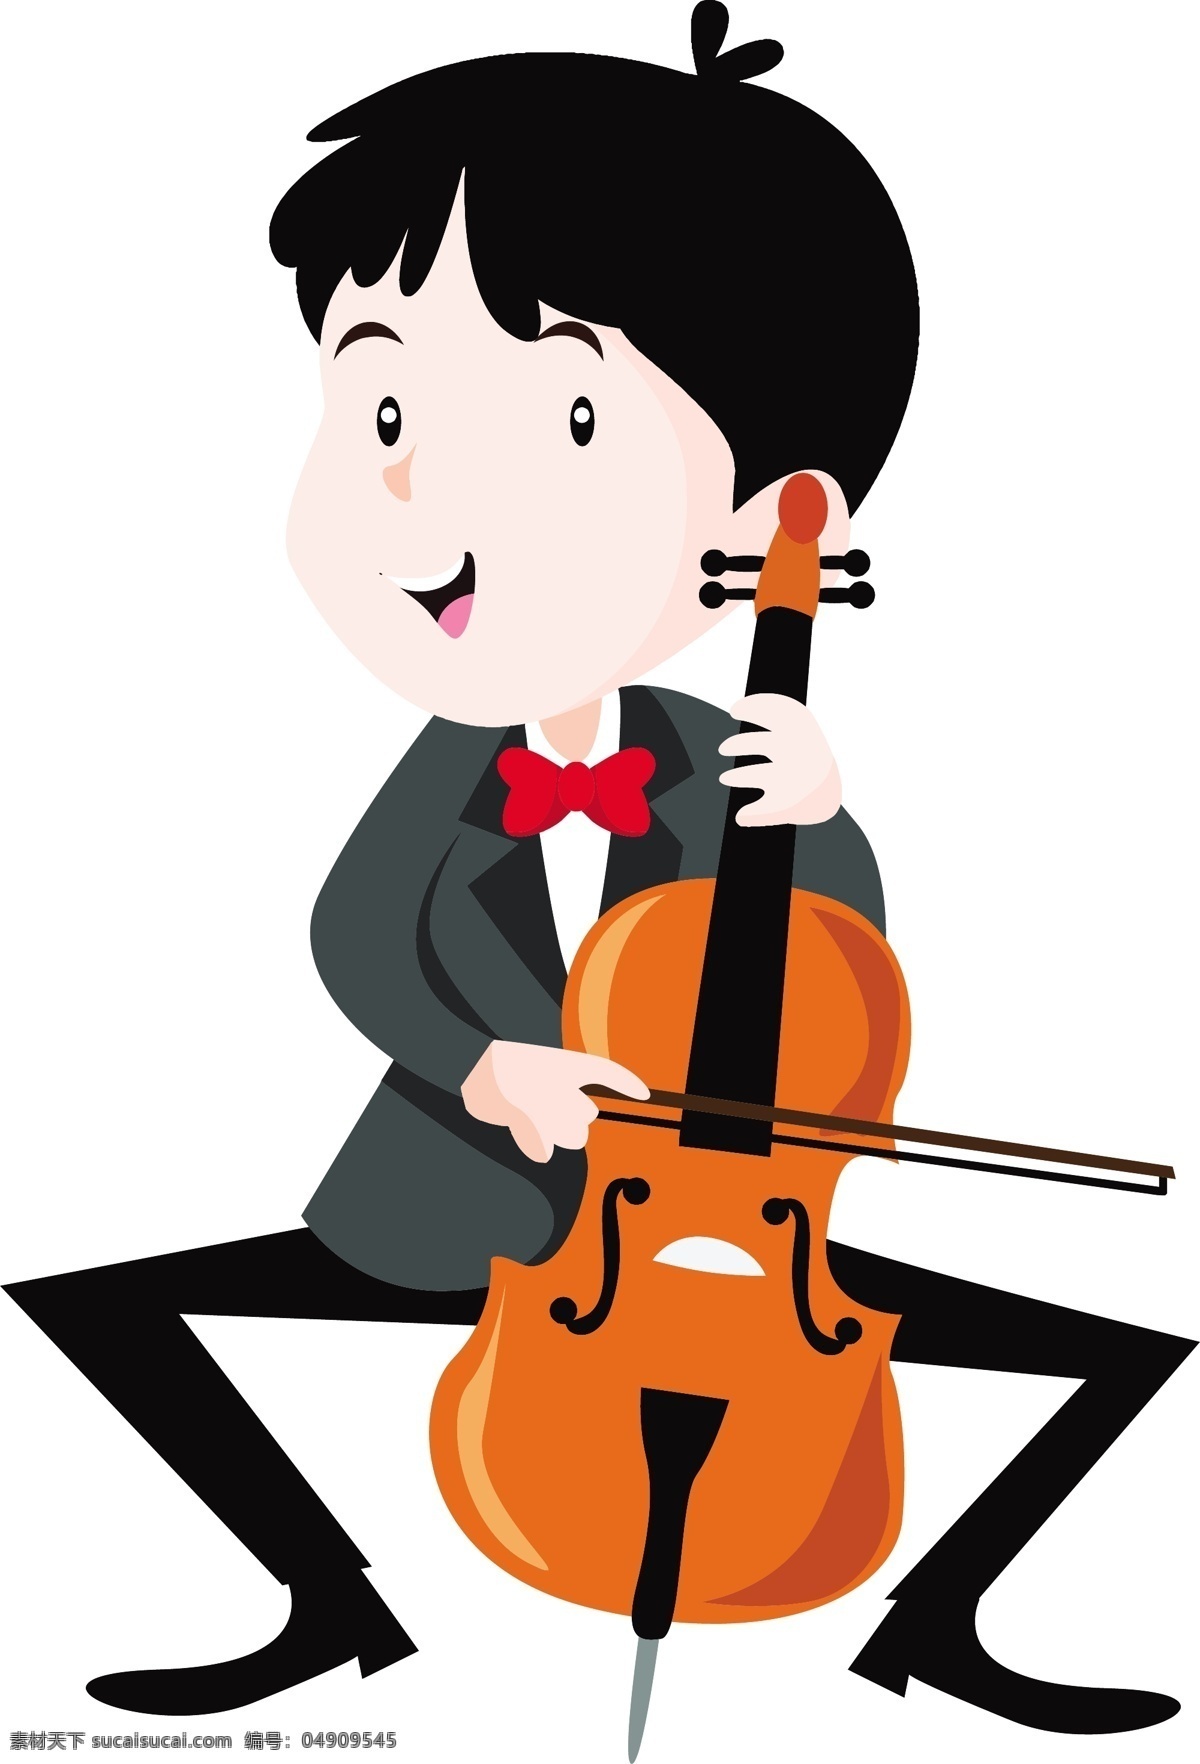 大提琴 孩子 乐队 矢量 可爱 卡通儿童 插画漫画 儿童孩子男孩 白色